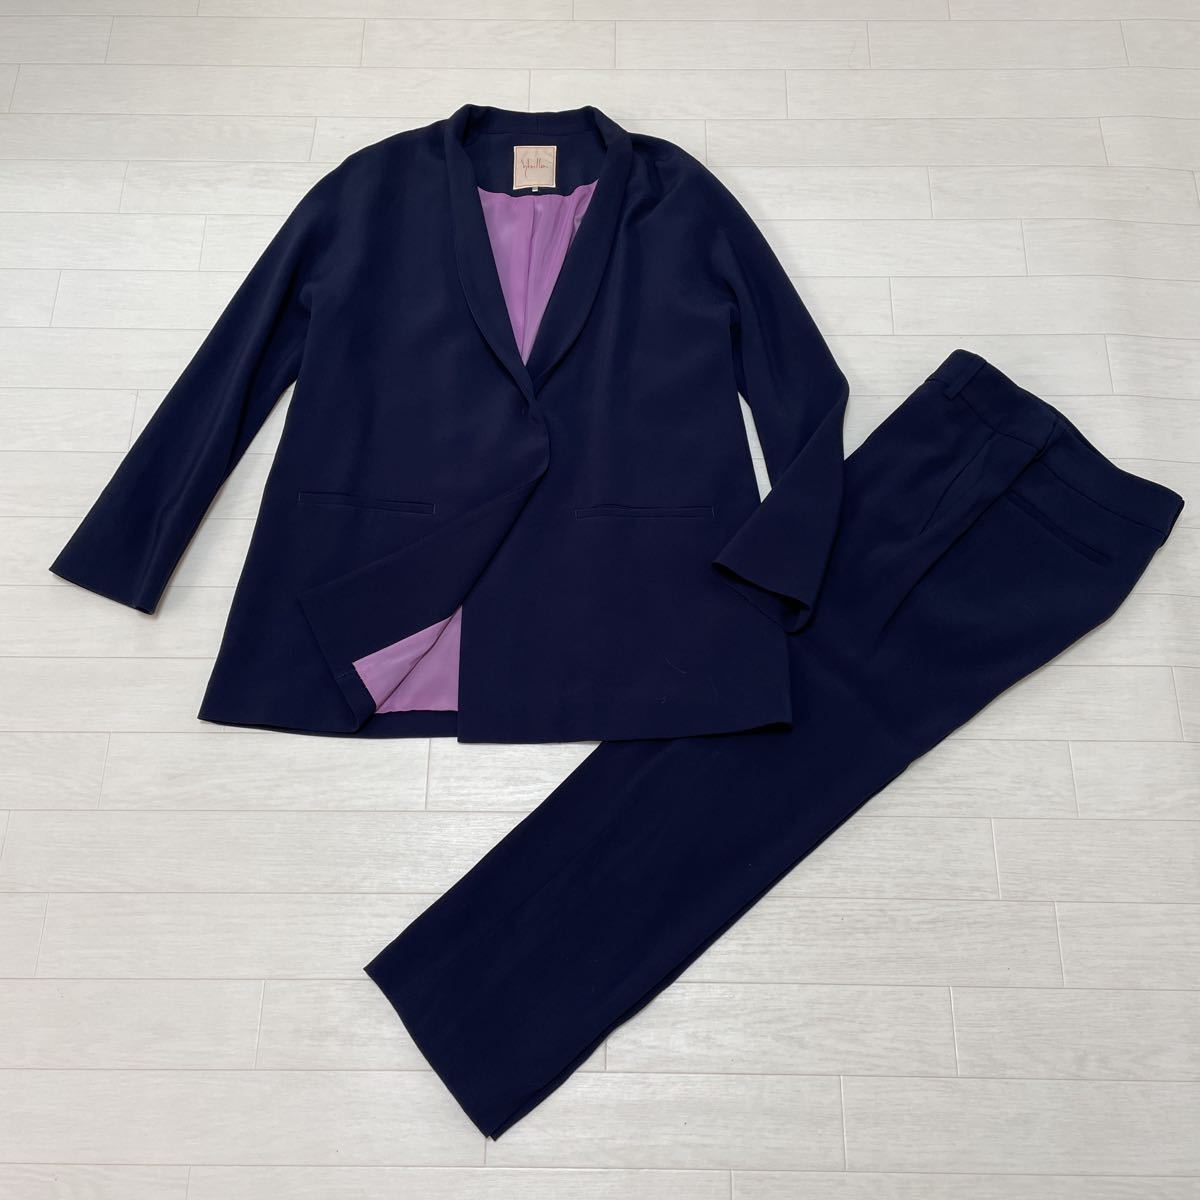 シビラ Sybilla レディース パンツスーツ セットアップスーツ 濃紺 ネイビー 日本製 サイズM 美品